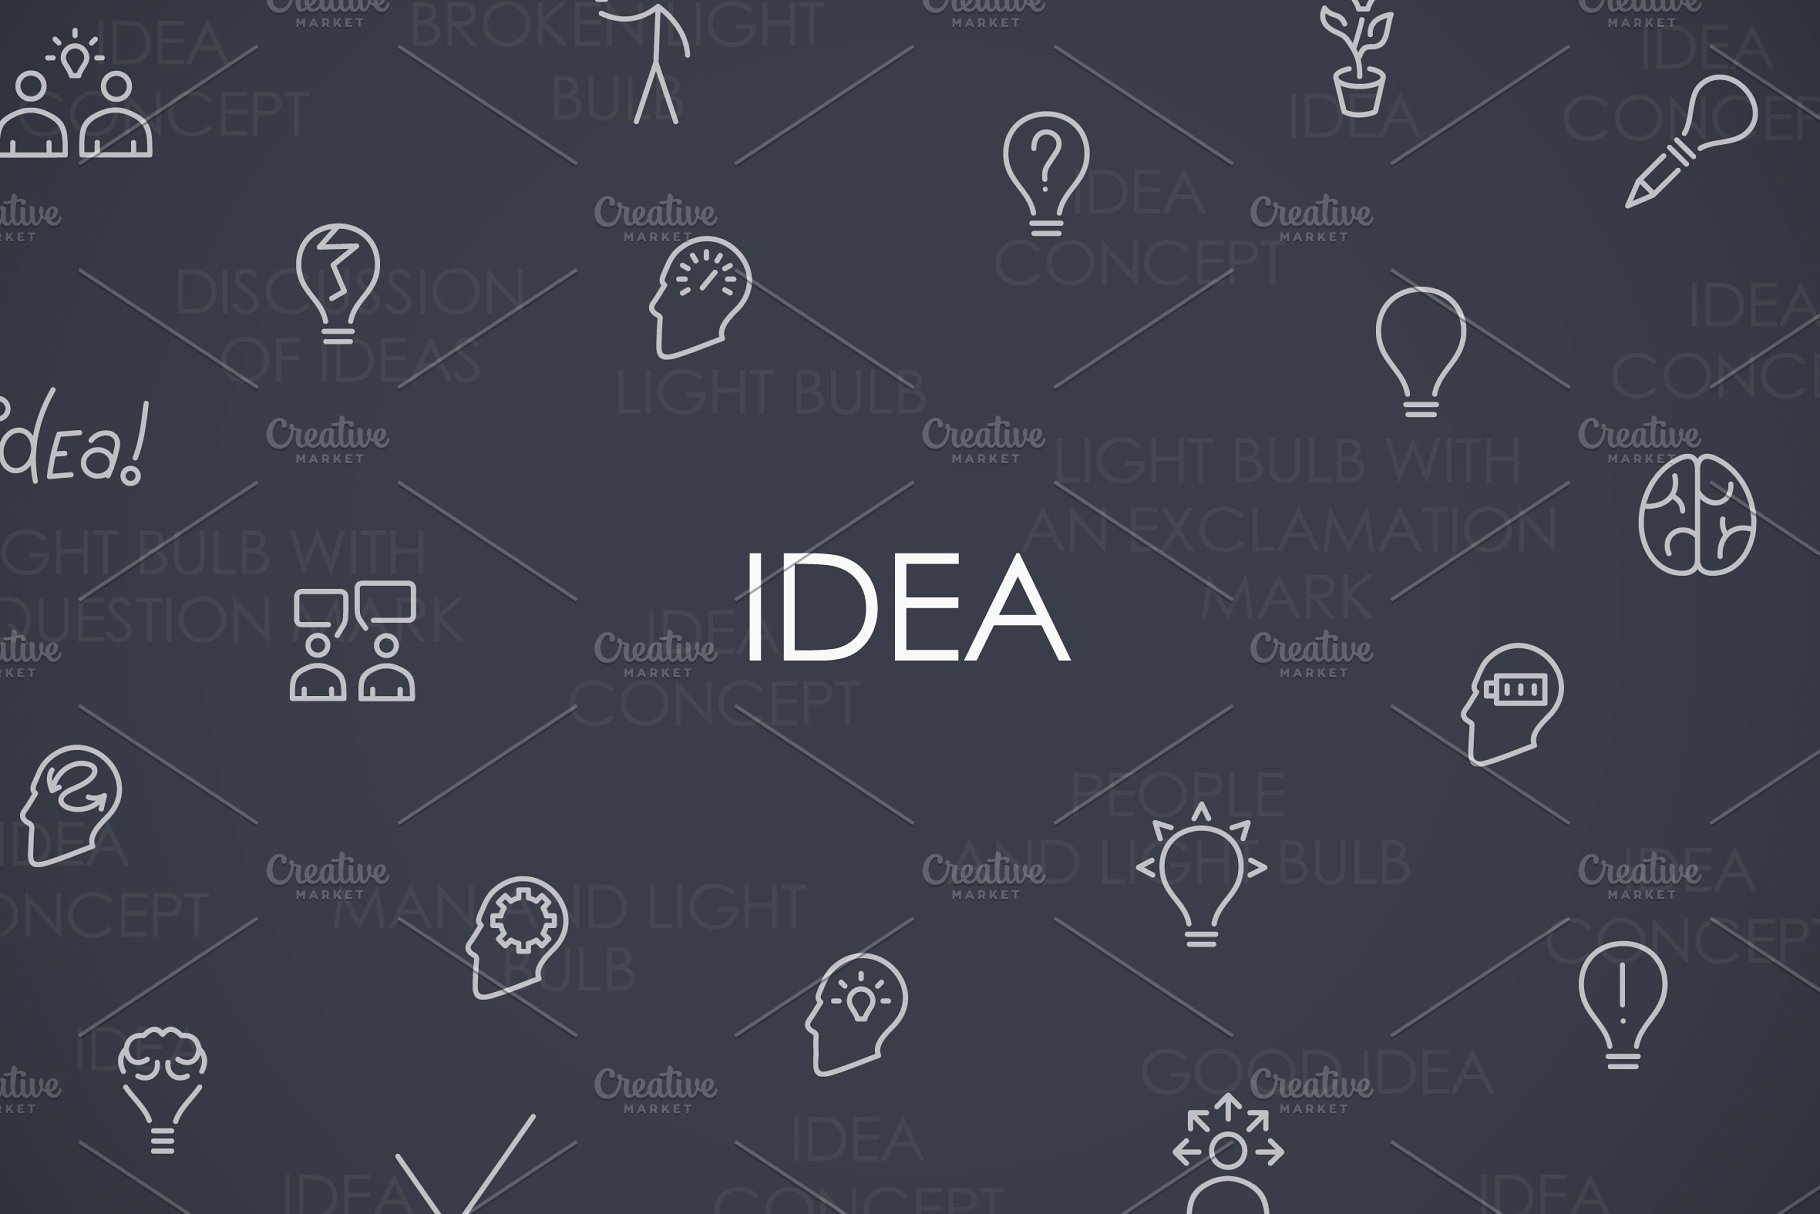 创意主题图标套装 Idea thinline icons #